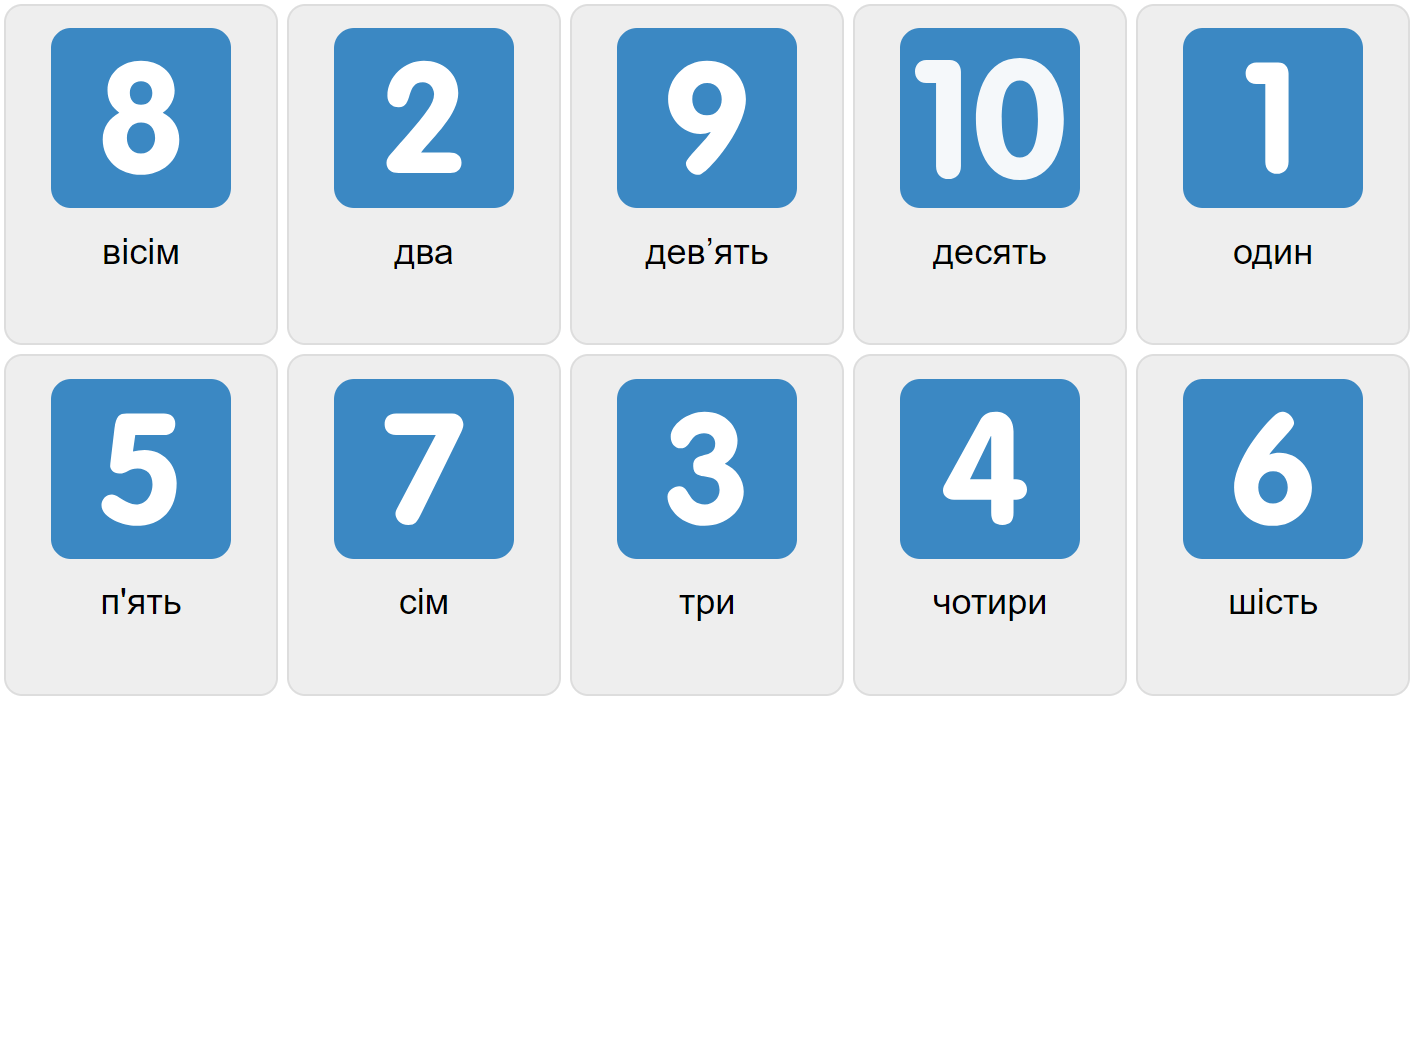 Numbers 1-10 in Ukrainian